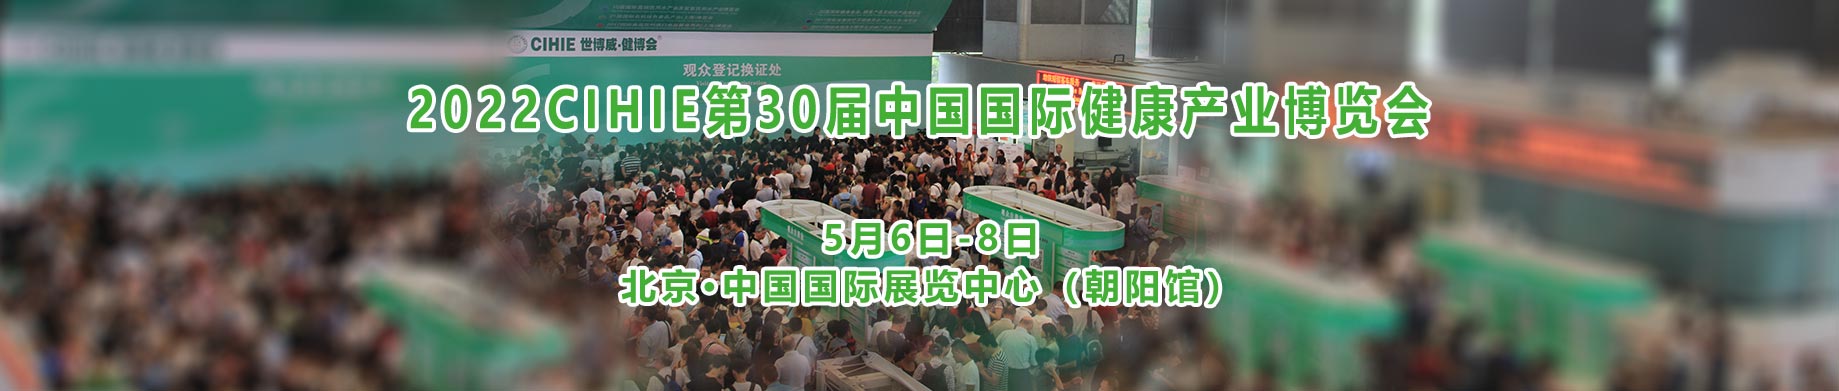 中国国际健康产业博览会